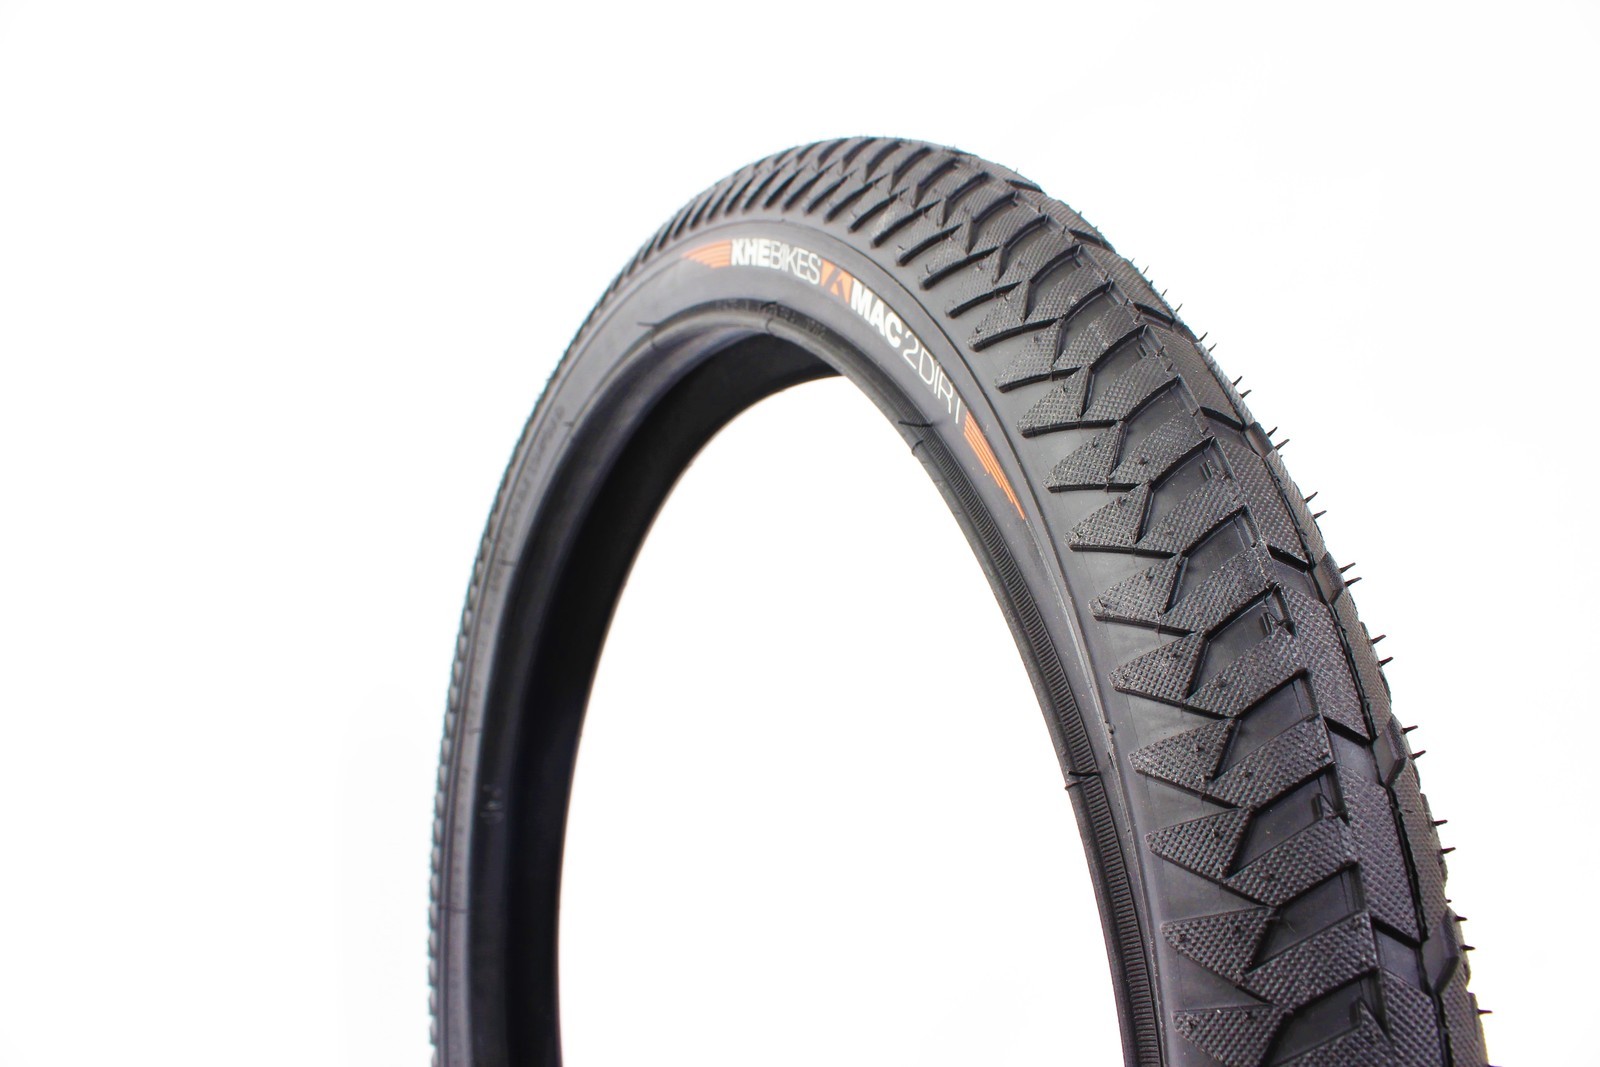 Khe Bmx Bike Tyre Mac2+, Black, 20"X2.3", Dirt Khe Bmx Bike Tyre Mac2+, Black, 20"X2.3", Dirt